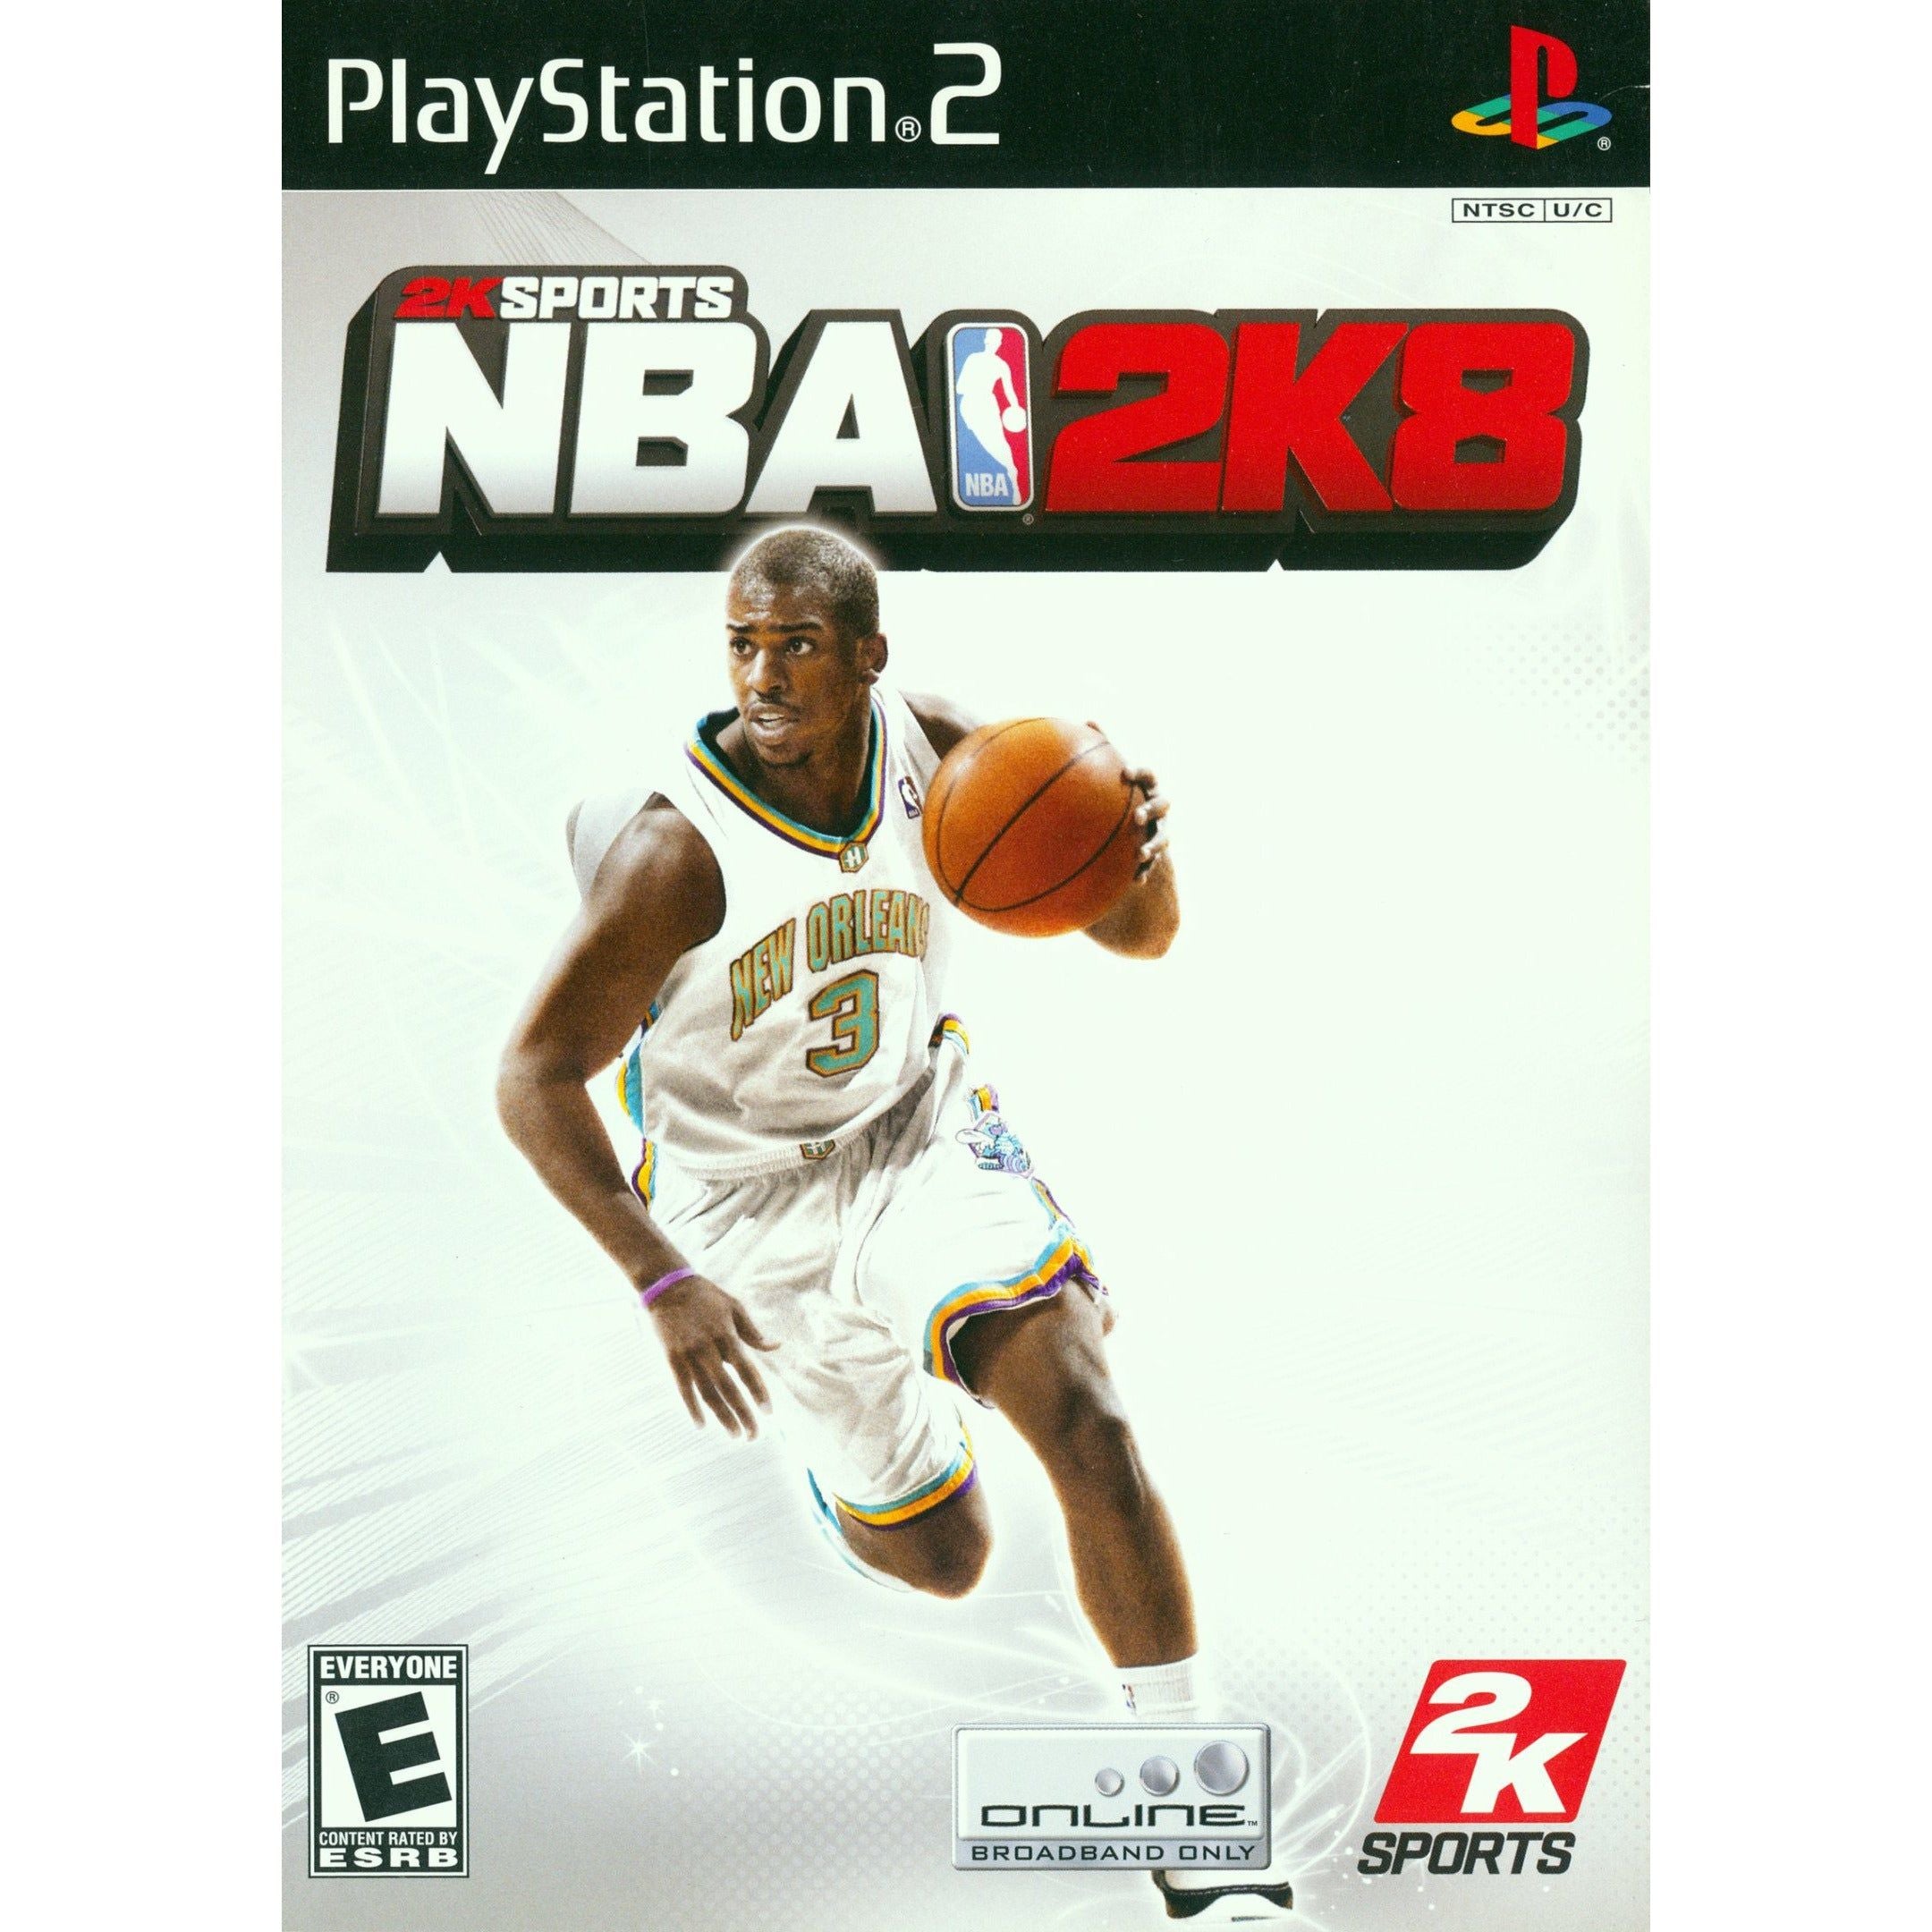 PS2-NBA 2K8